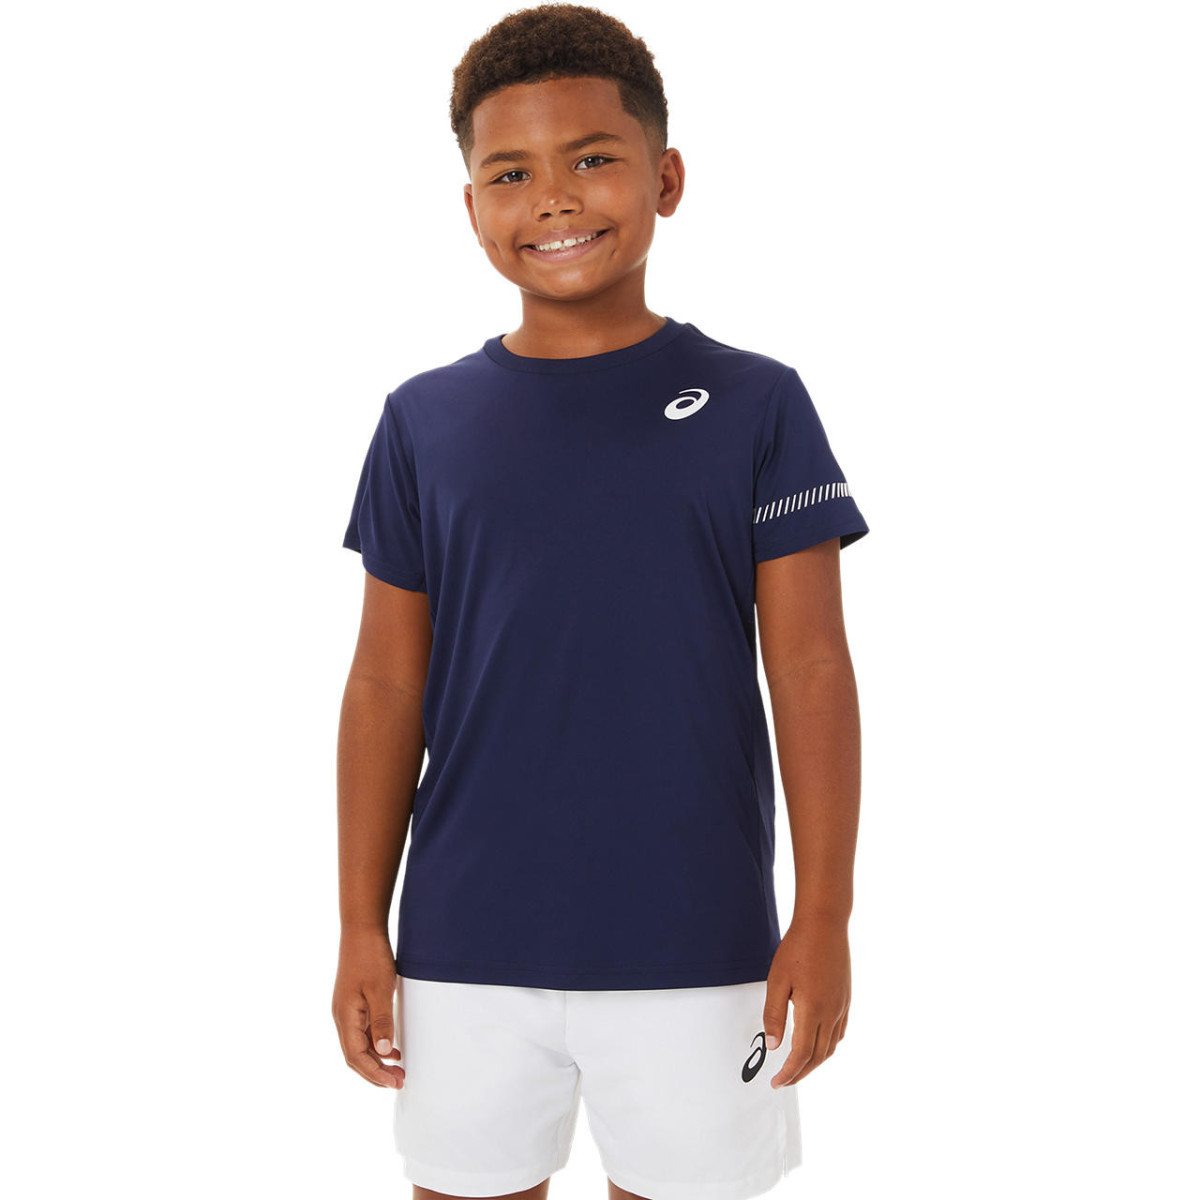 Asics Tennis T-shirt Enfant Marine AH22